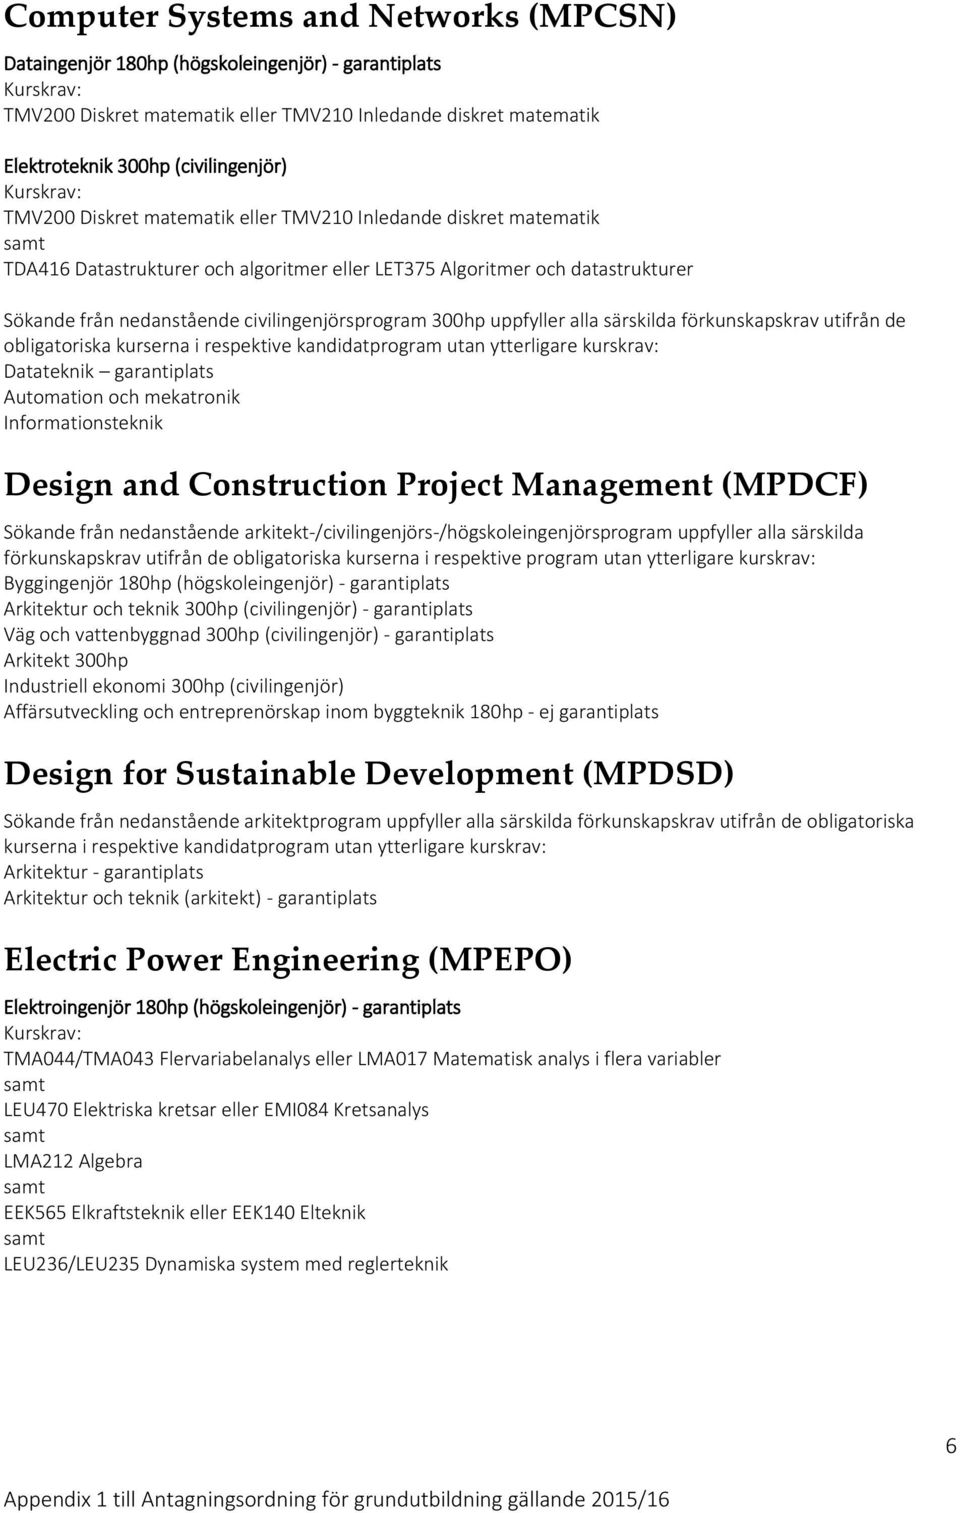 Informationsteknik Design and Construction Project Management (MPDCF) Sökande från nedanstående arkitekt-/civilingenjörs-/högskoleingenjörsprogram uppfyller alla särskilda förkunskapskrav utifrån de